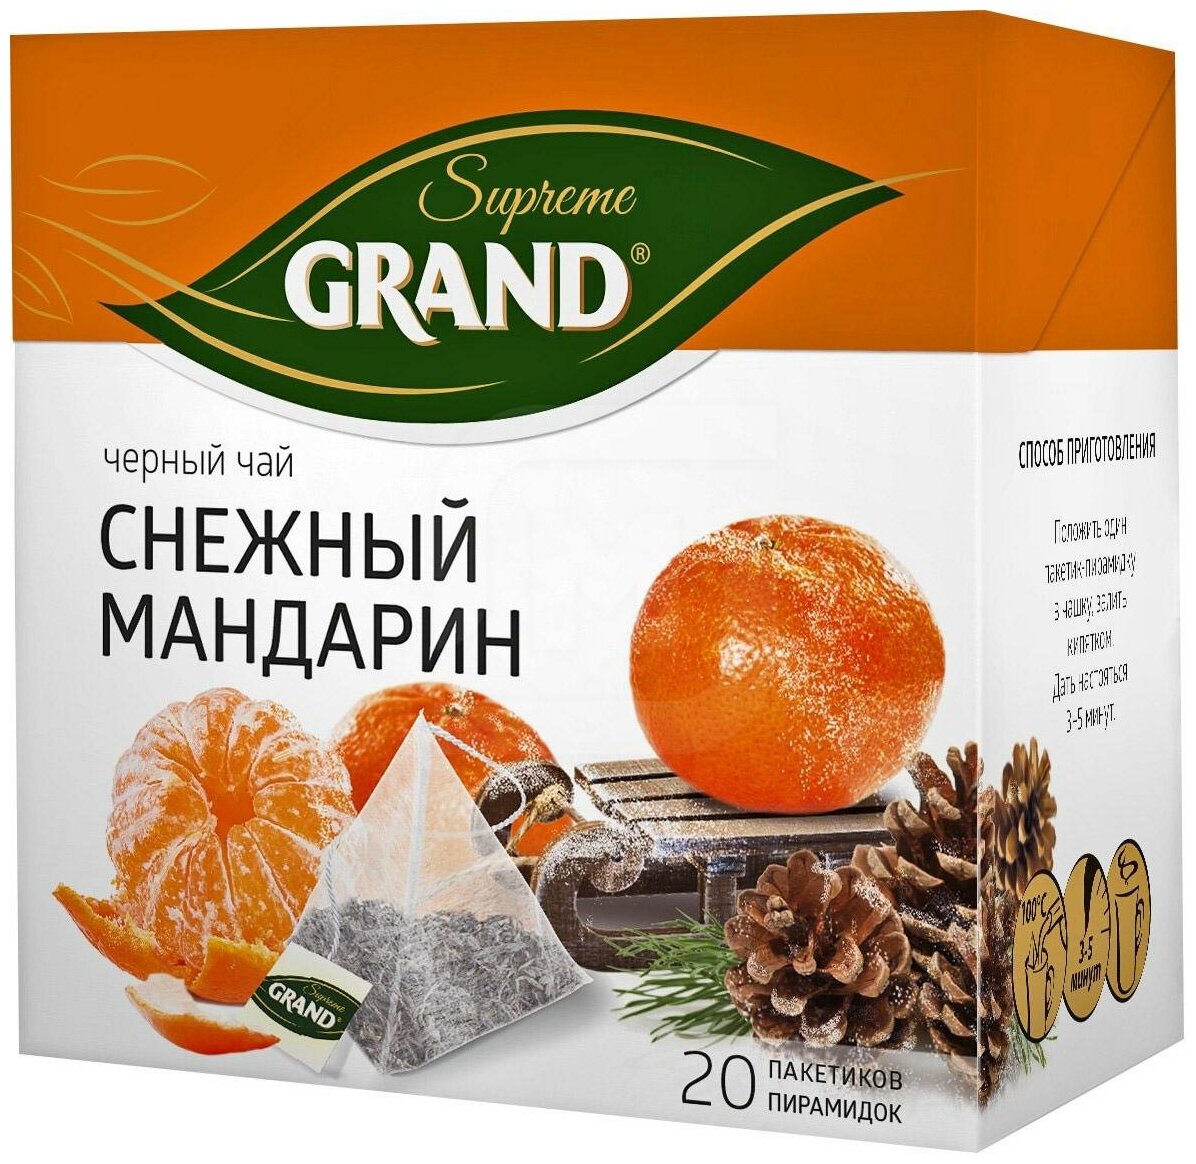 Grand supreme Чай черный байховый Снежный мандарин 20пир